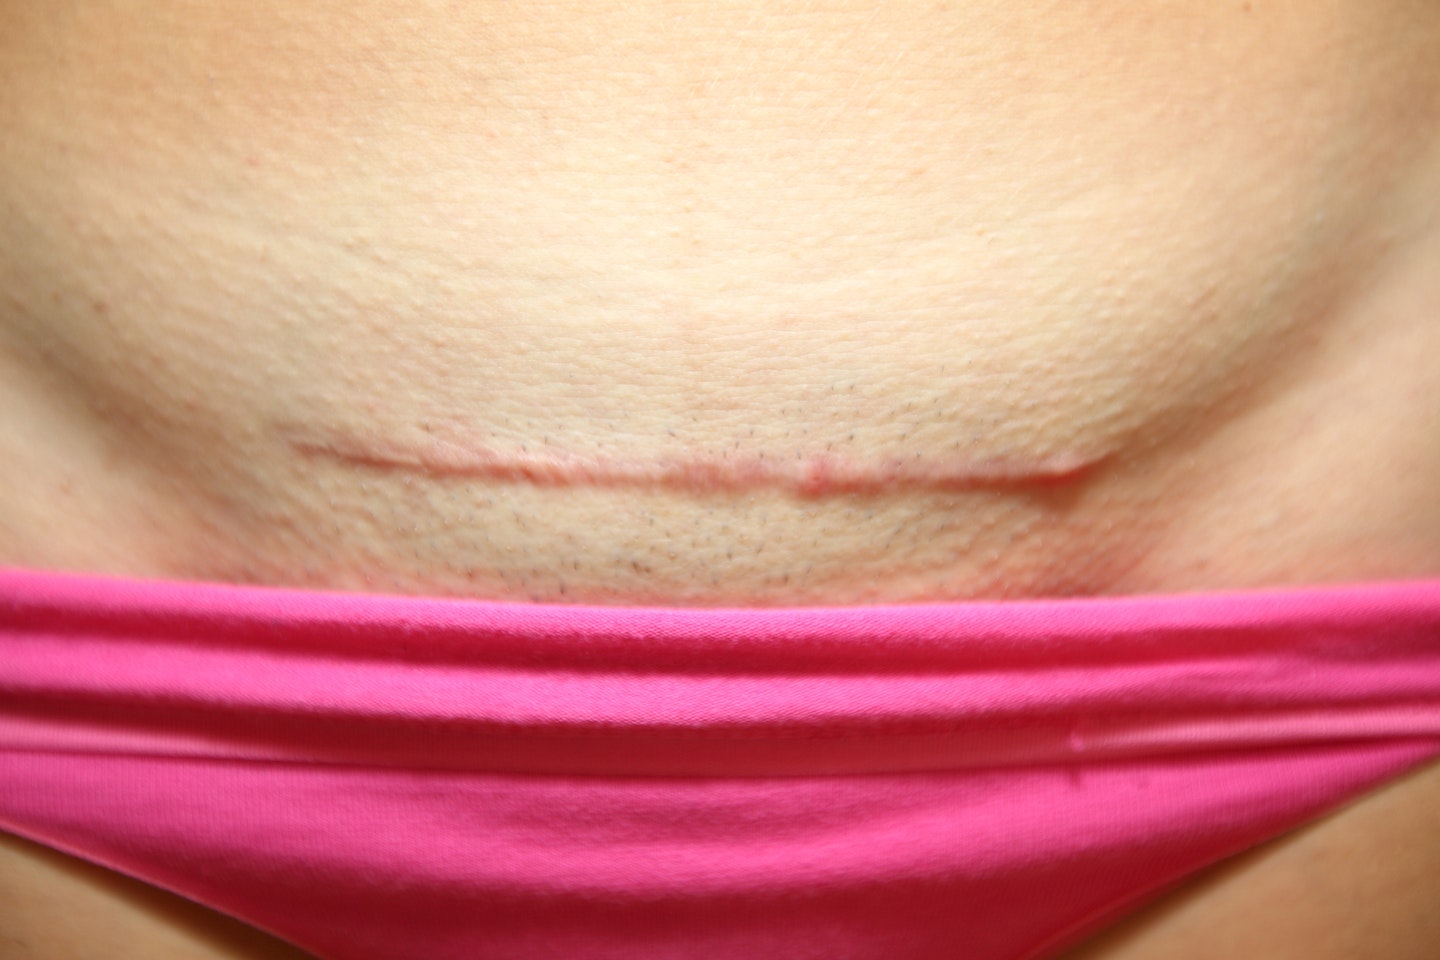 Scar on womens body